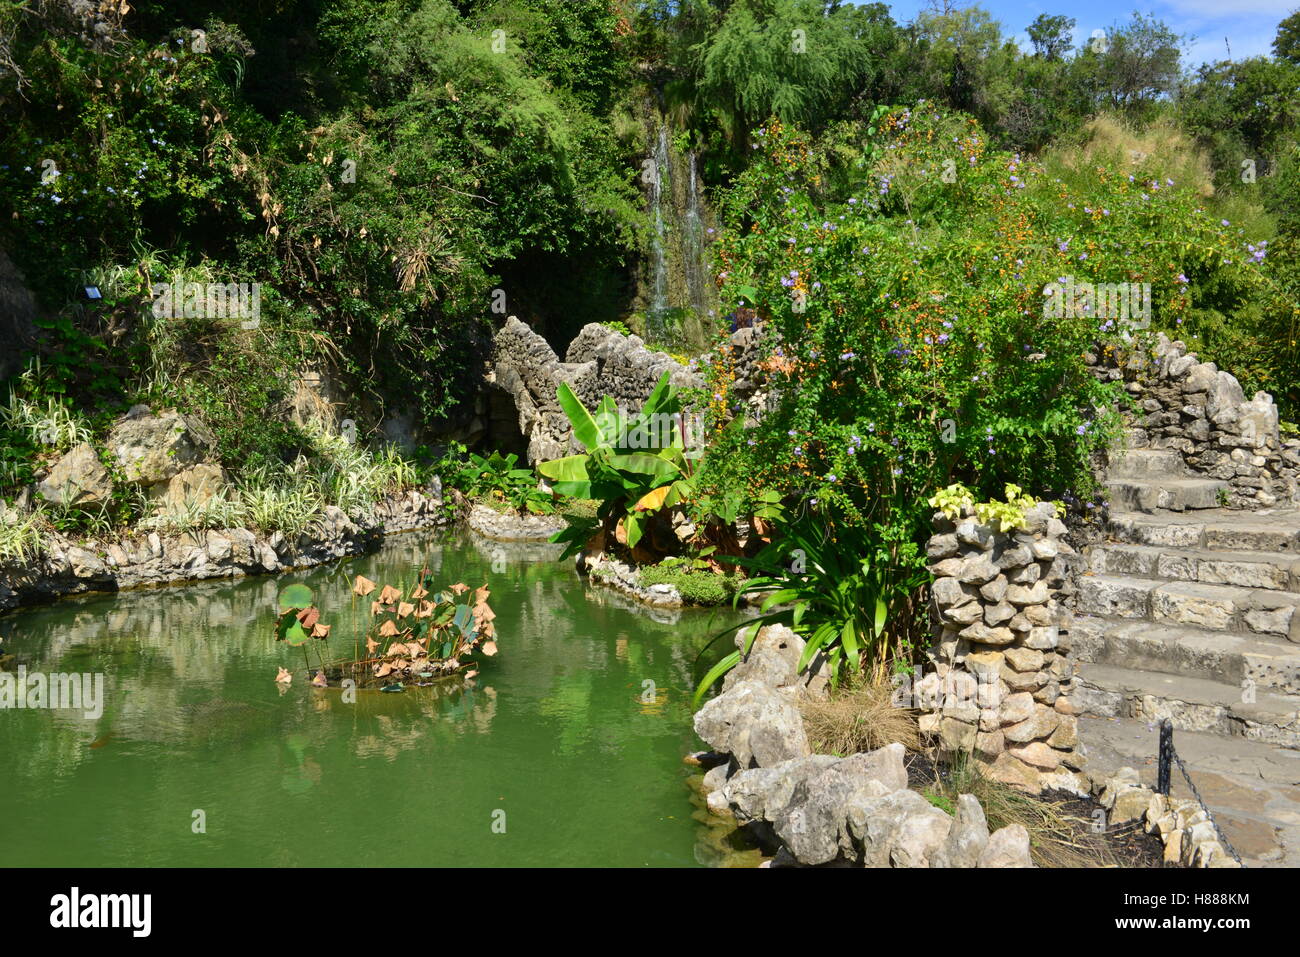 A Japanese Garden In San Antonio In Texas Stock Photo 125572264